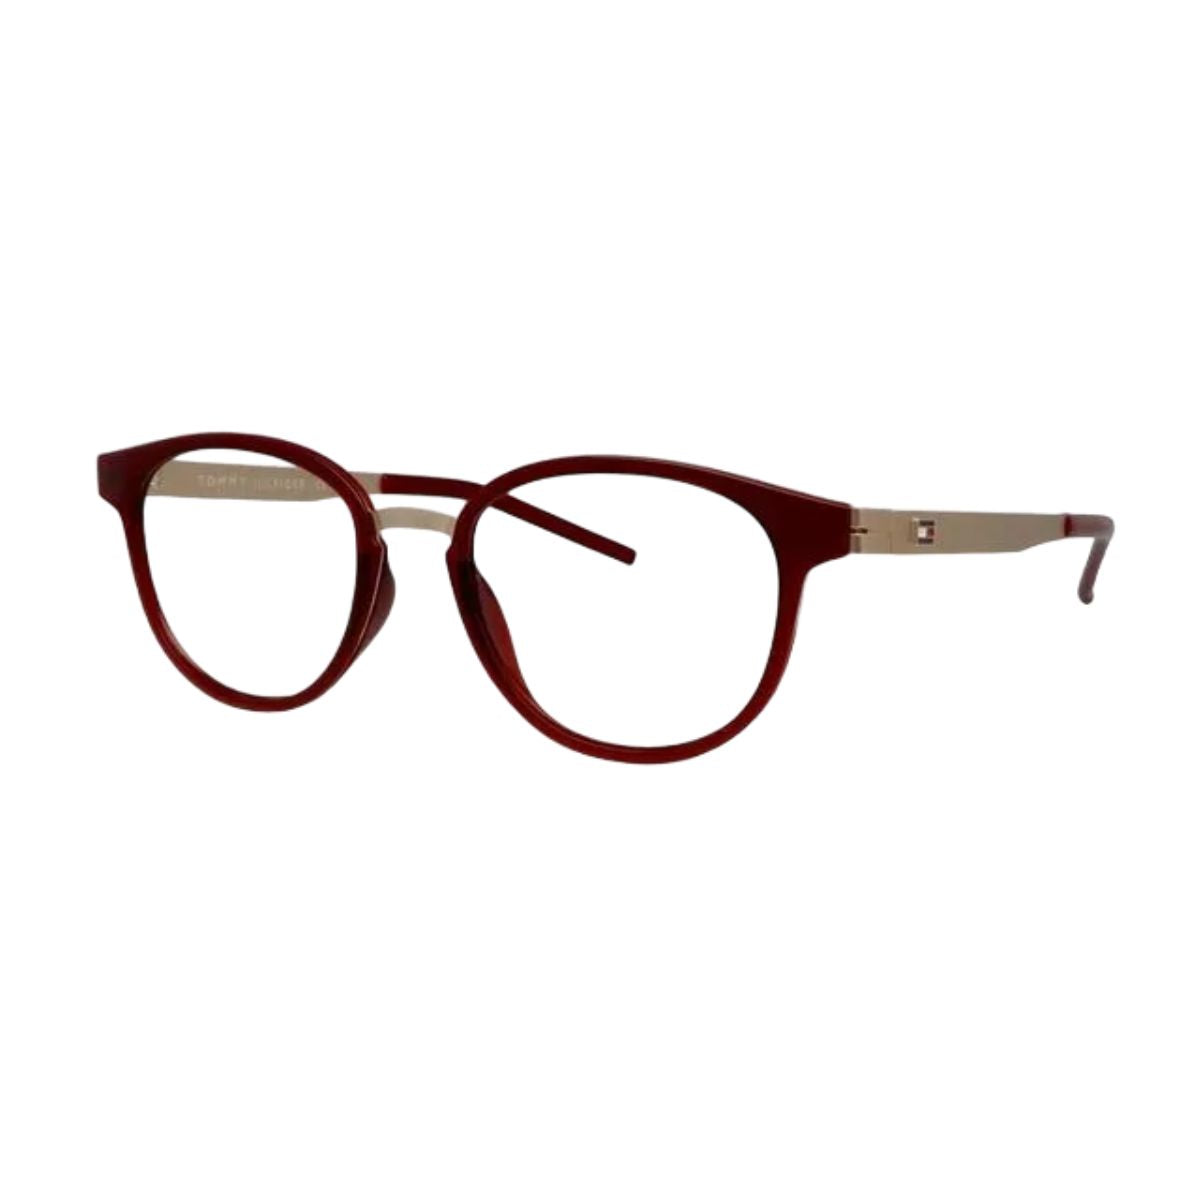 "Tommy Hilfiger 6005 C2 optical eyeglasses frame for men and women online at optorium"